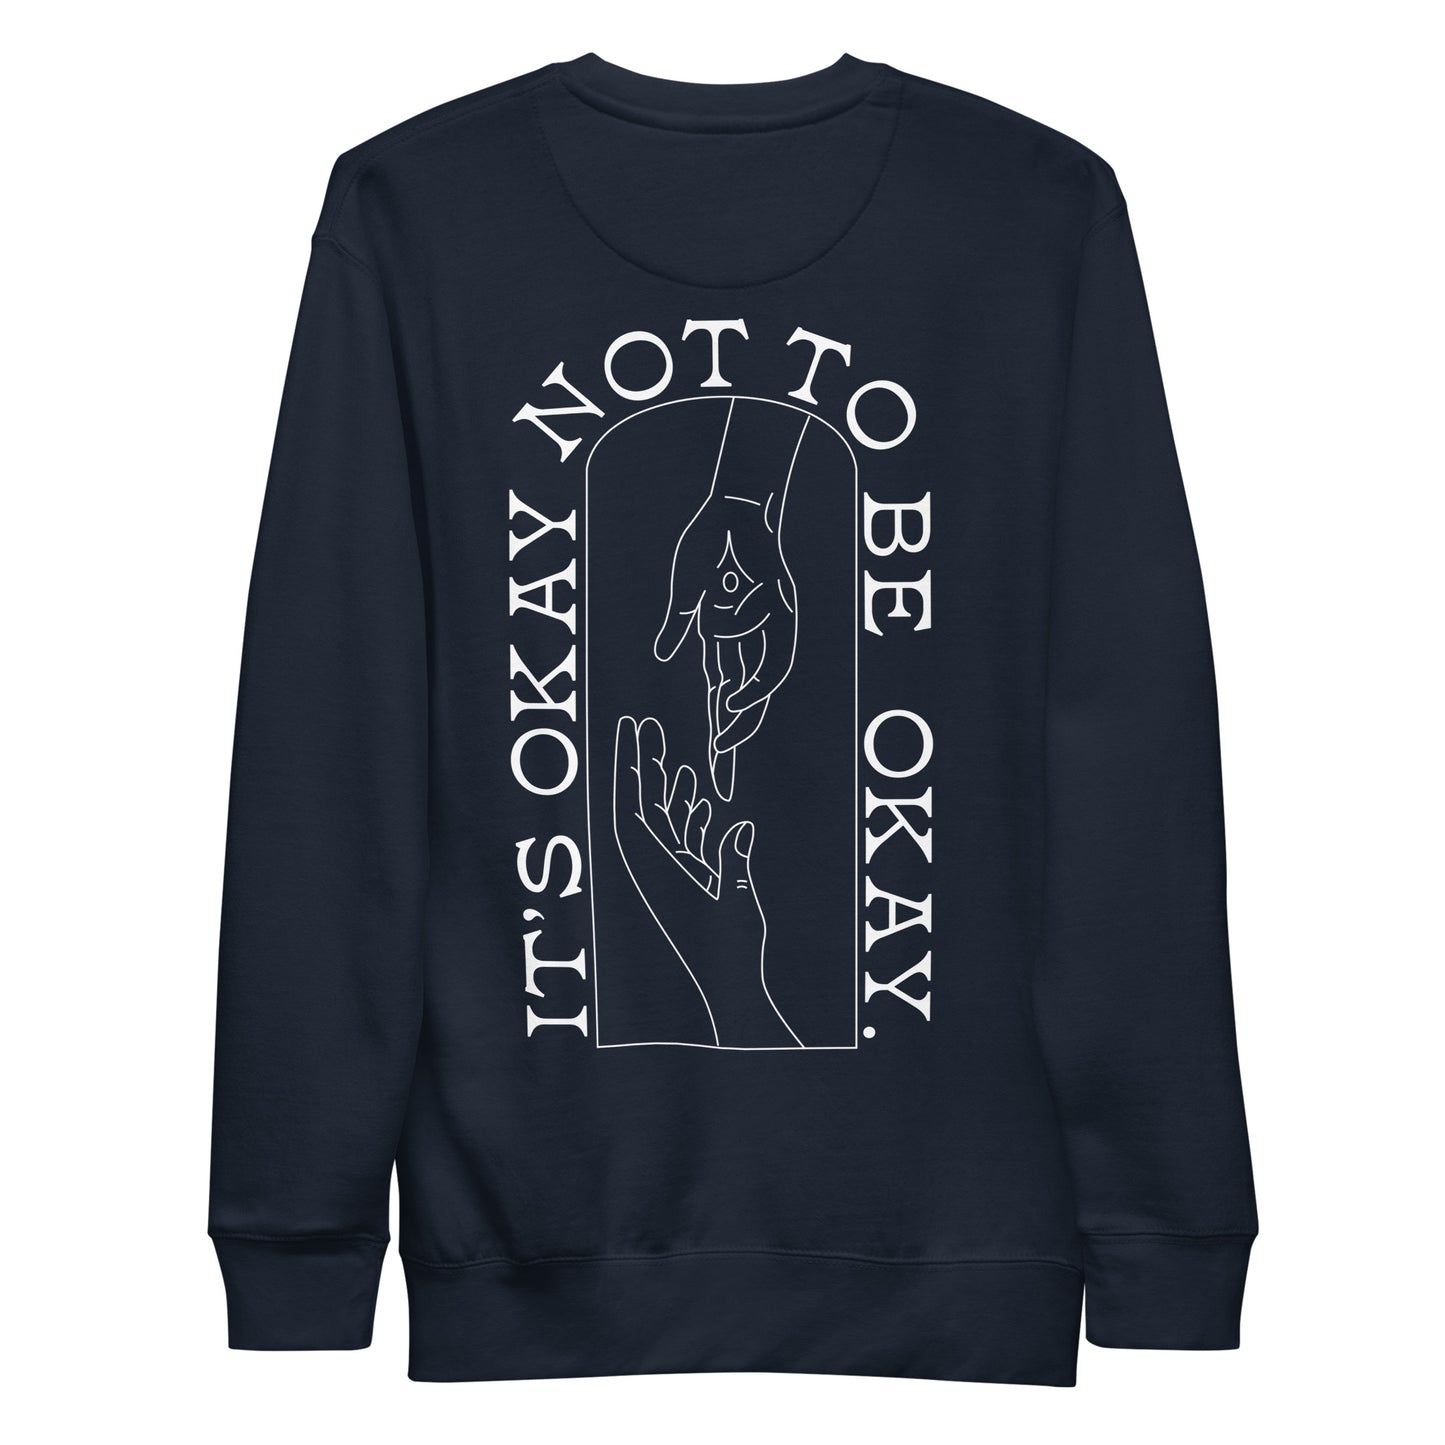 It's Okay Not To Be Okay - Unisex Crewneck Sweatshirt